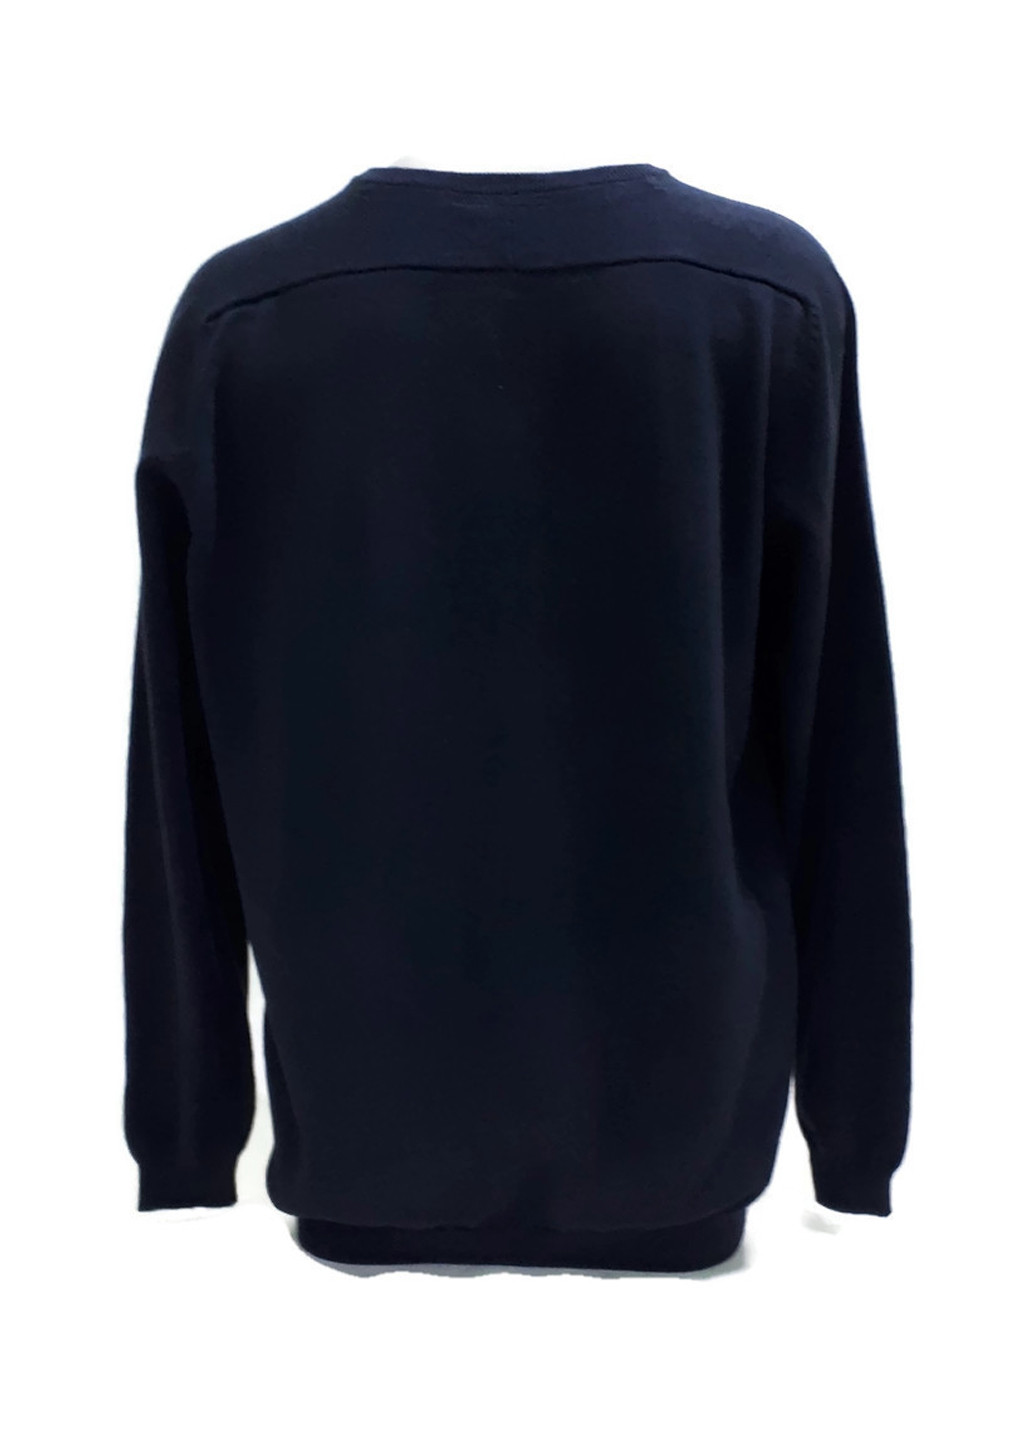 Темно-синий демисезонный пуловер пуловер Livergy